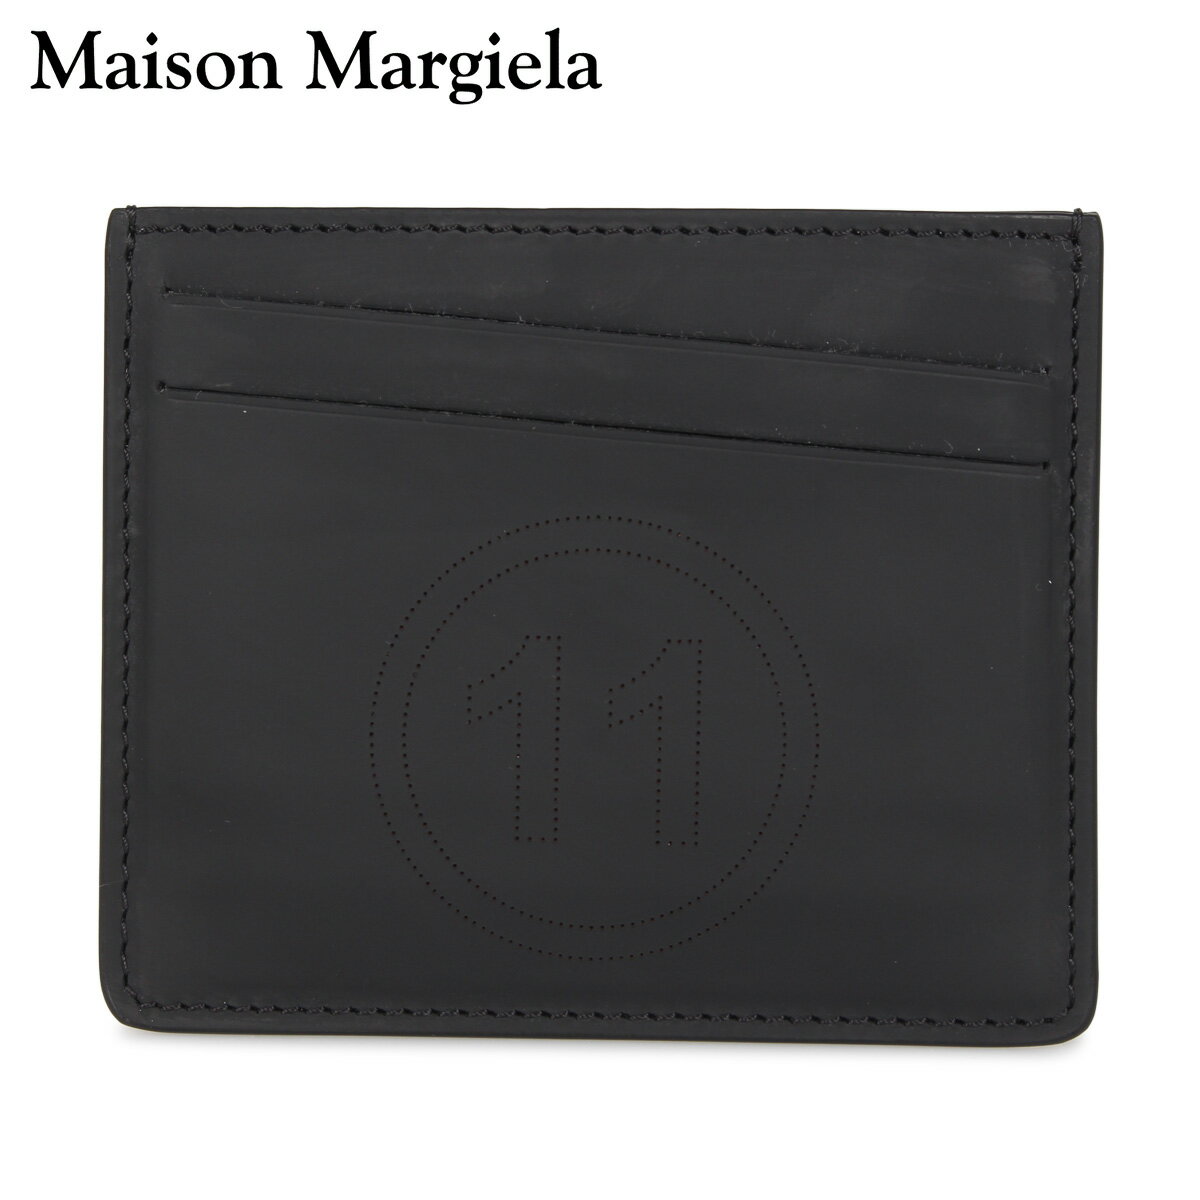 メゾンマルジェラ パスケース メンズ MAISON MARGIELA メゾンマルジェラ カードケース 名刺入れ 定期入れ メンズ レディース CARD CASE ブラック 黒 S35UI0432-T8013